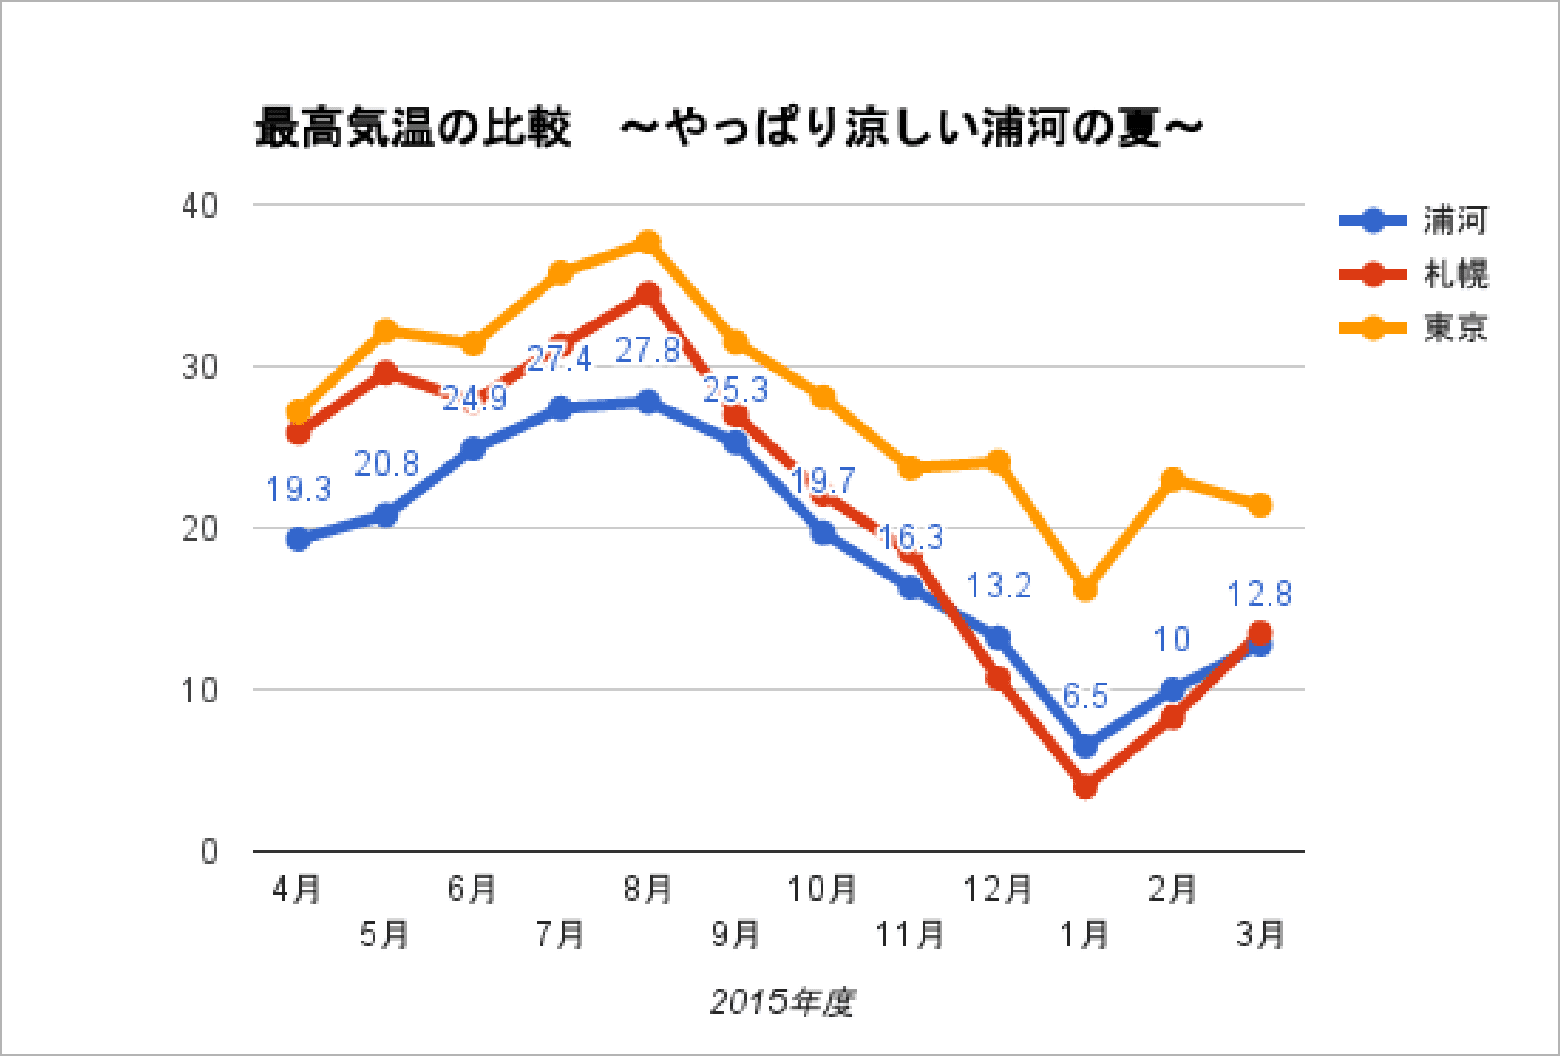 浦河と札幌と東京の最高気温の比較。やっぱり涼しい浦河の夏